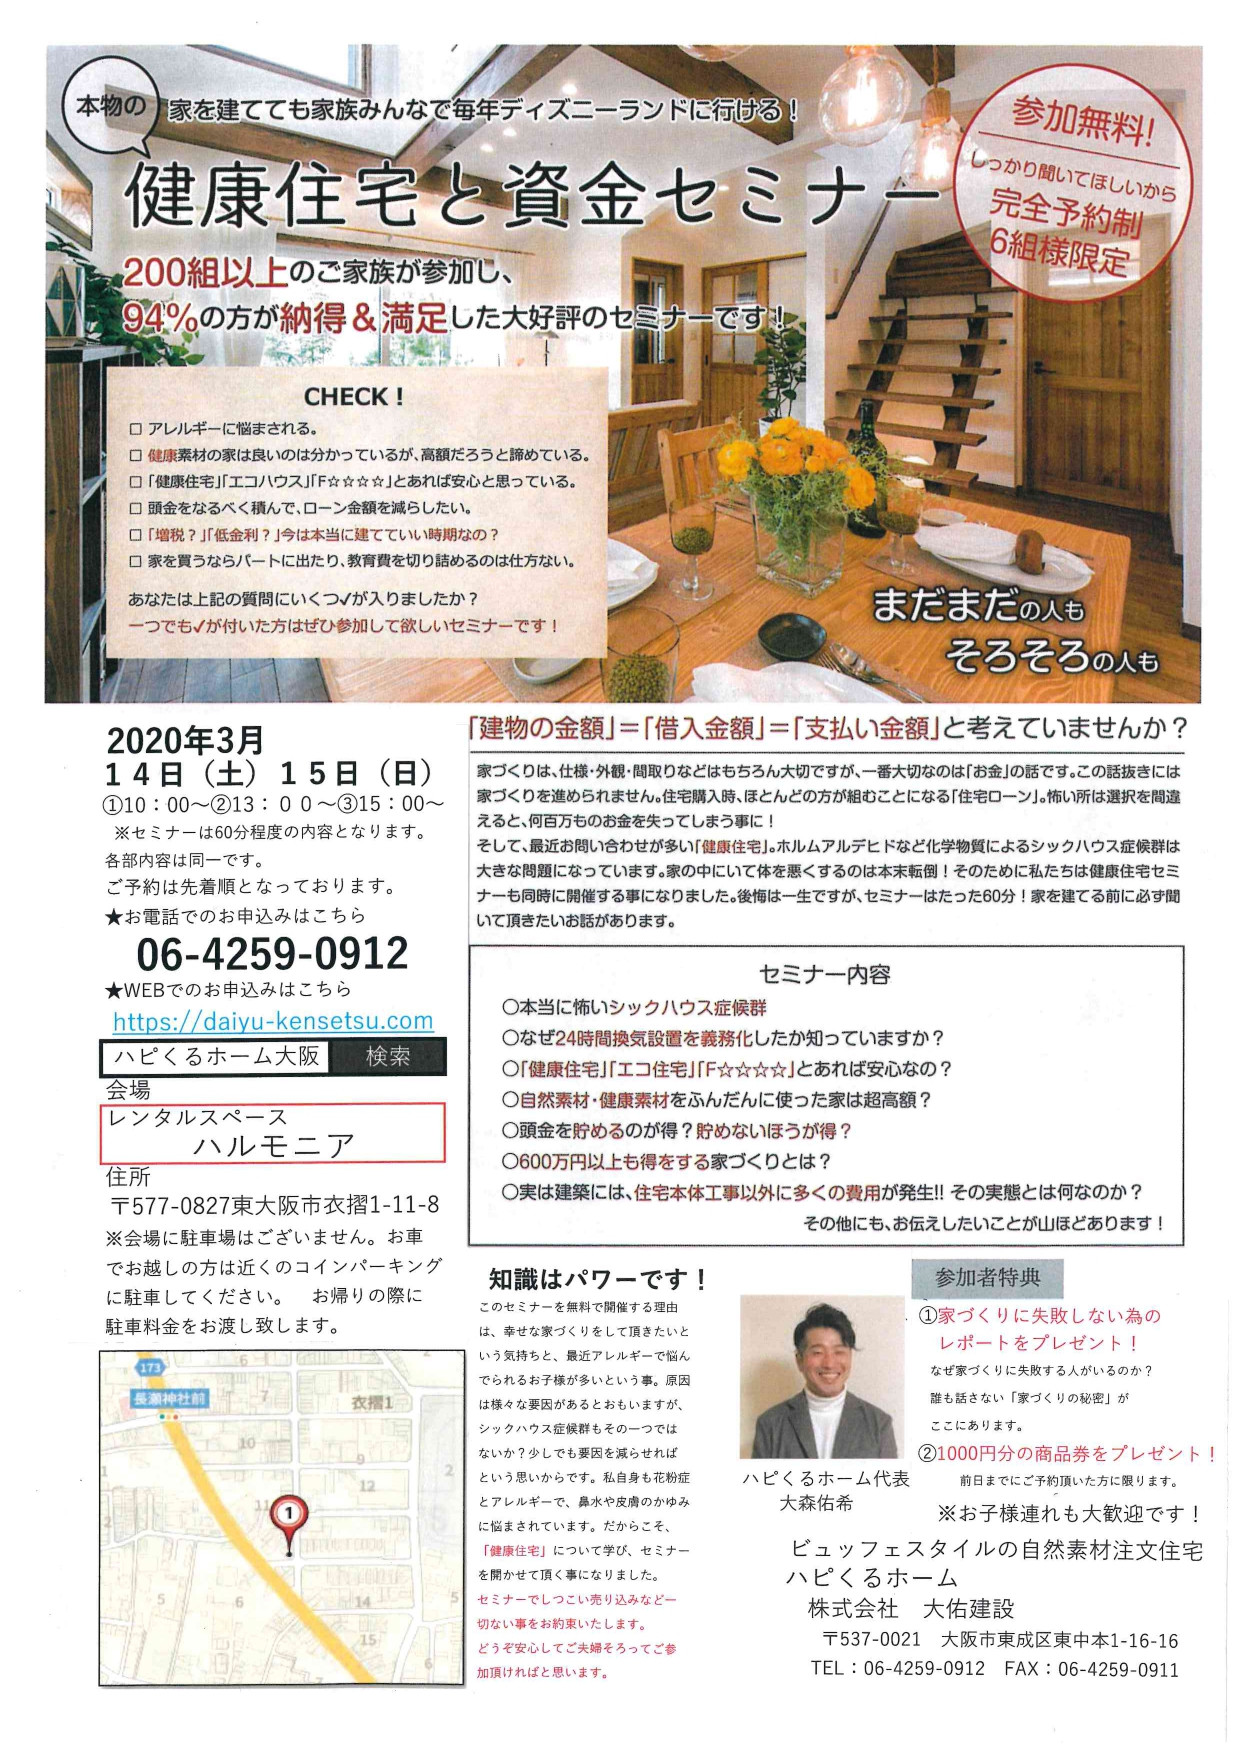 東大阪の衣摺で健康資金セミナーの開催